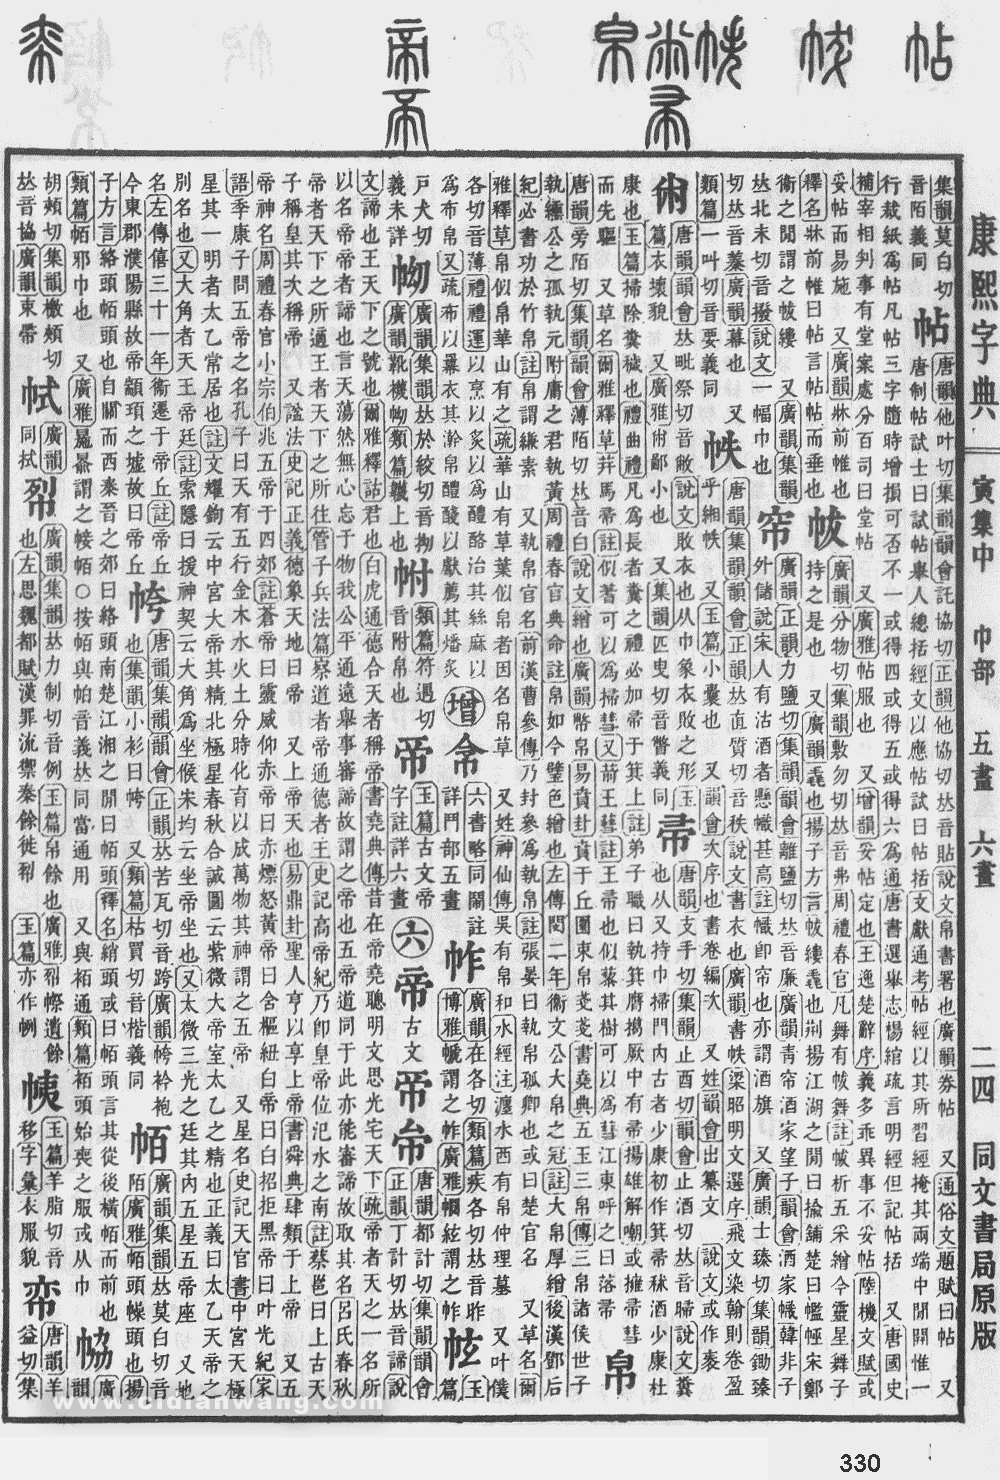 康熙字典掃描版第330頁